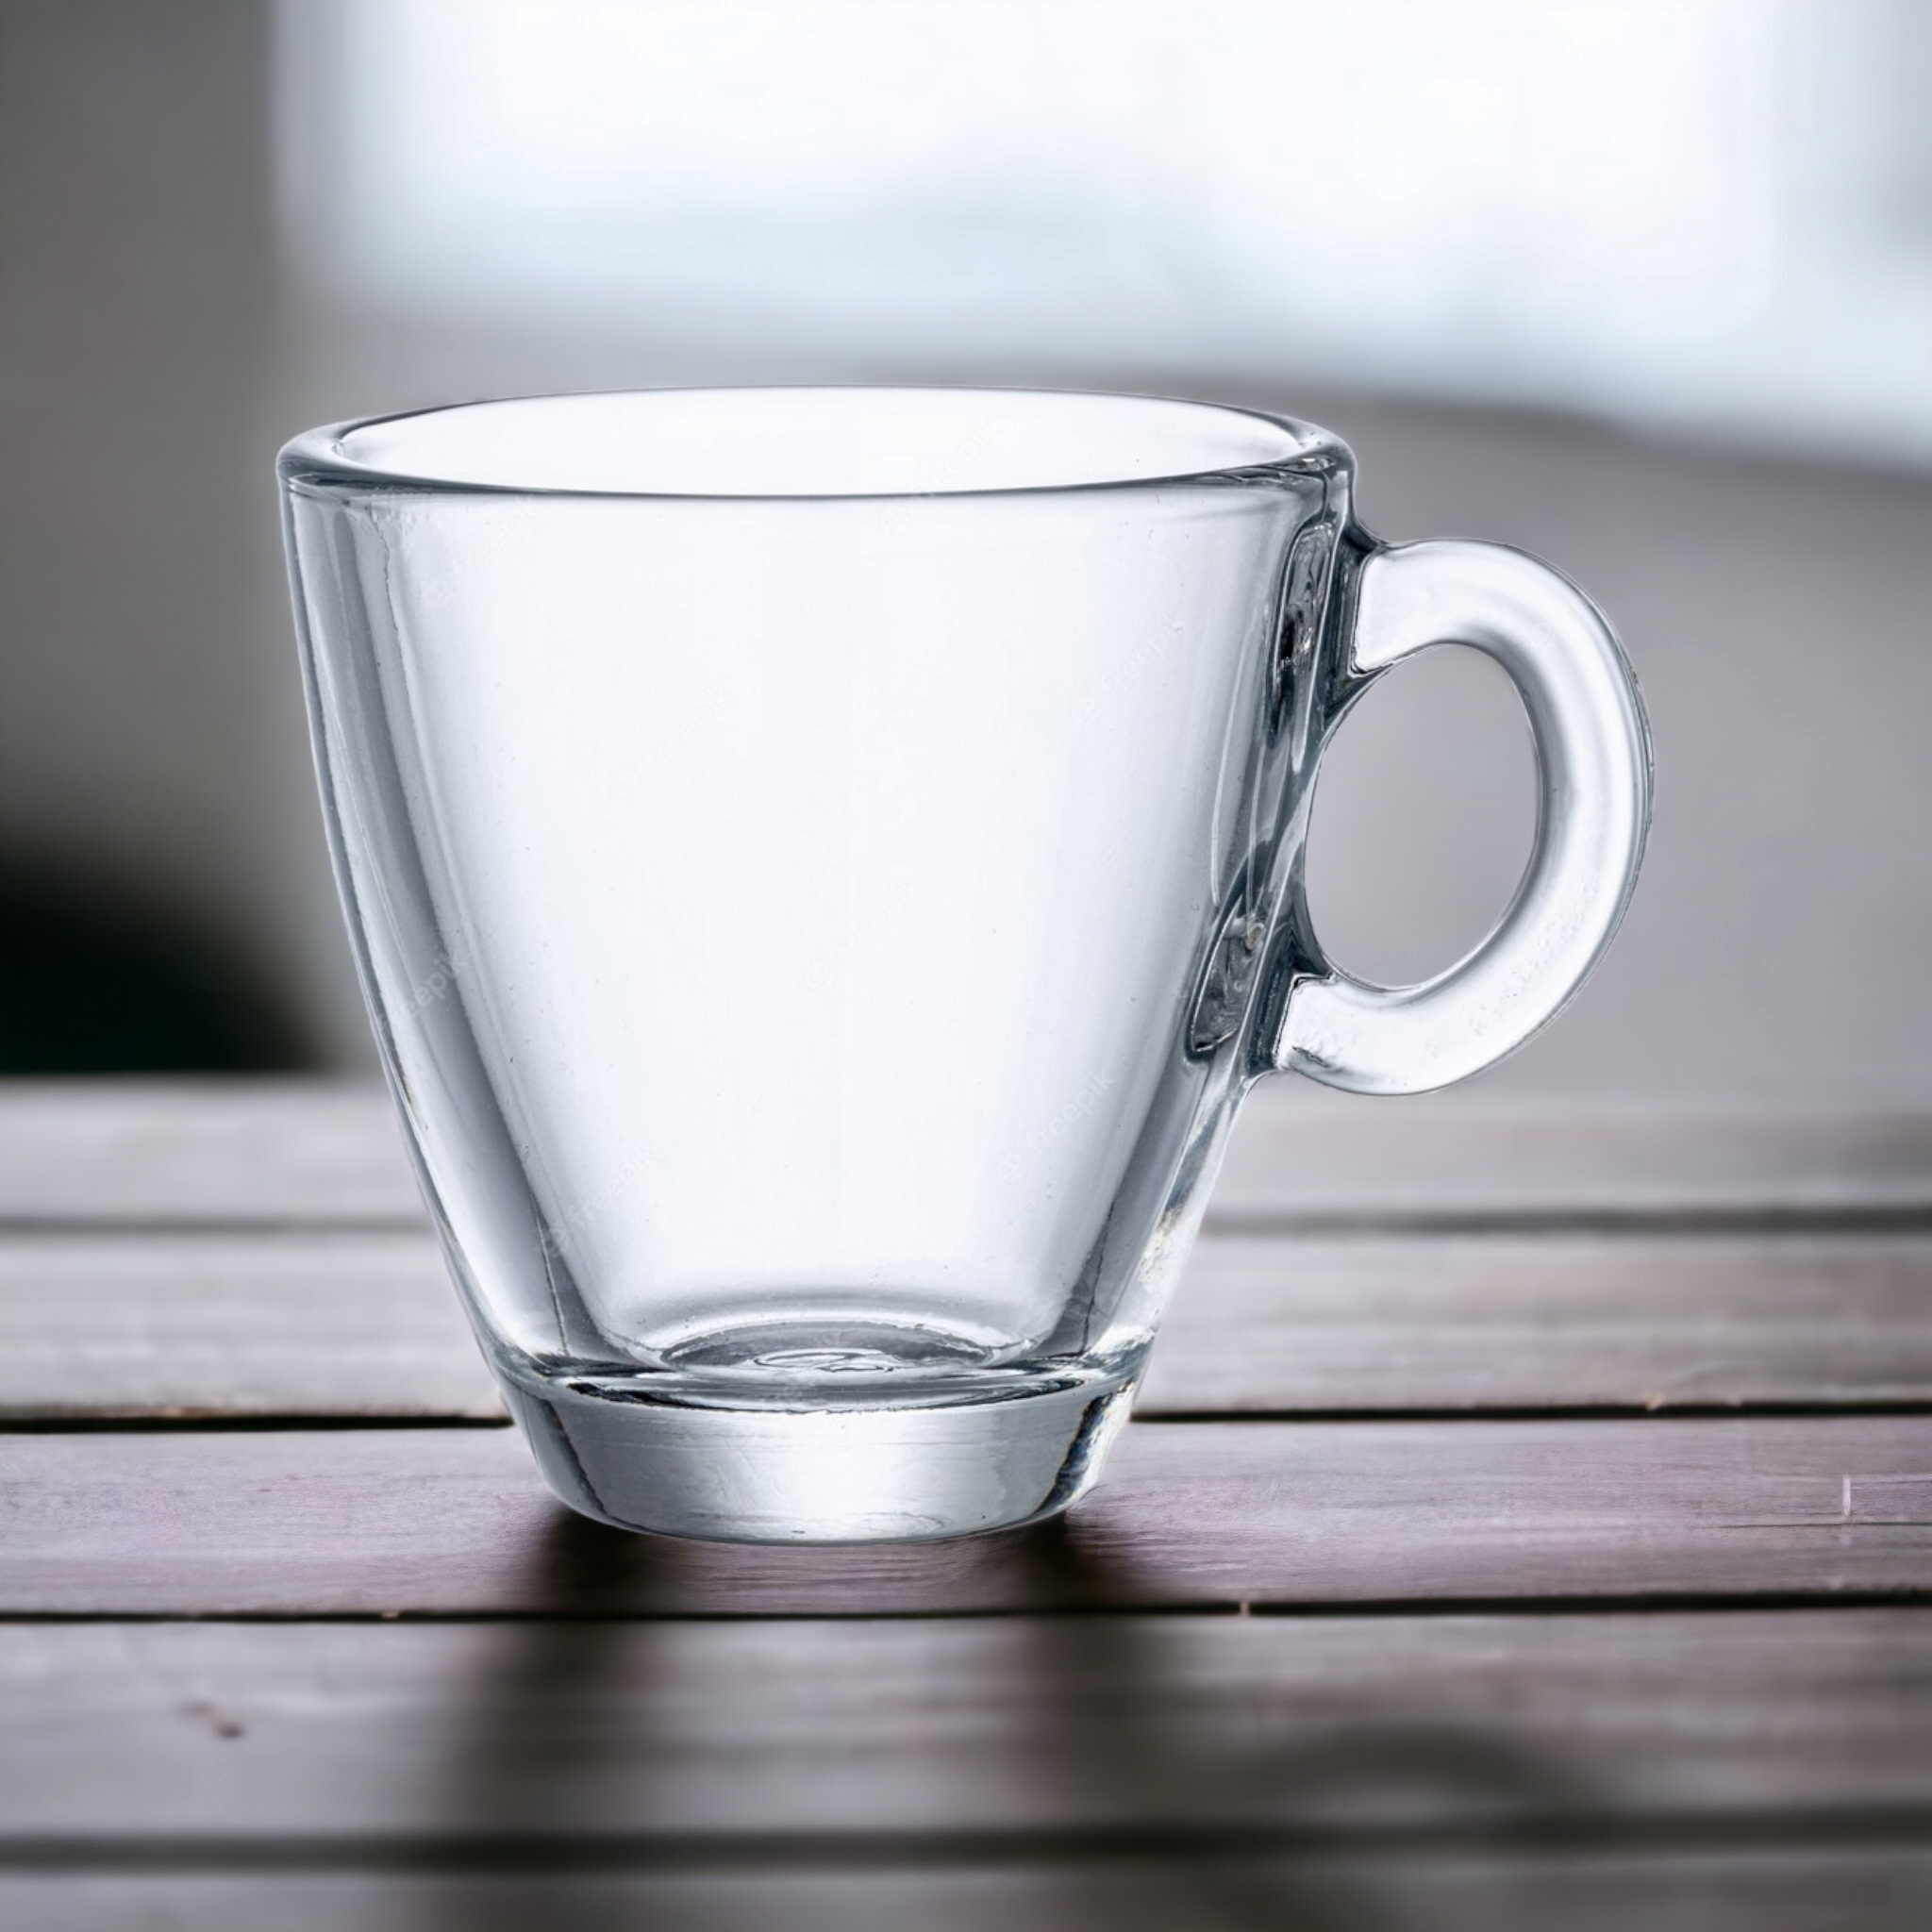 Pasabahce Glass Coffee Mug 150ml Clear 40837